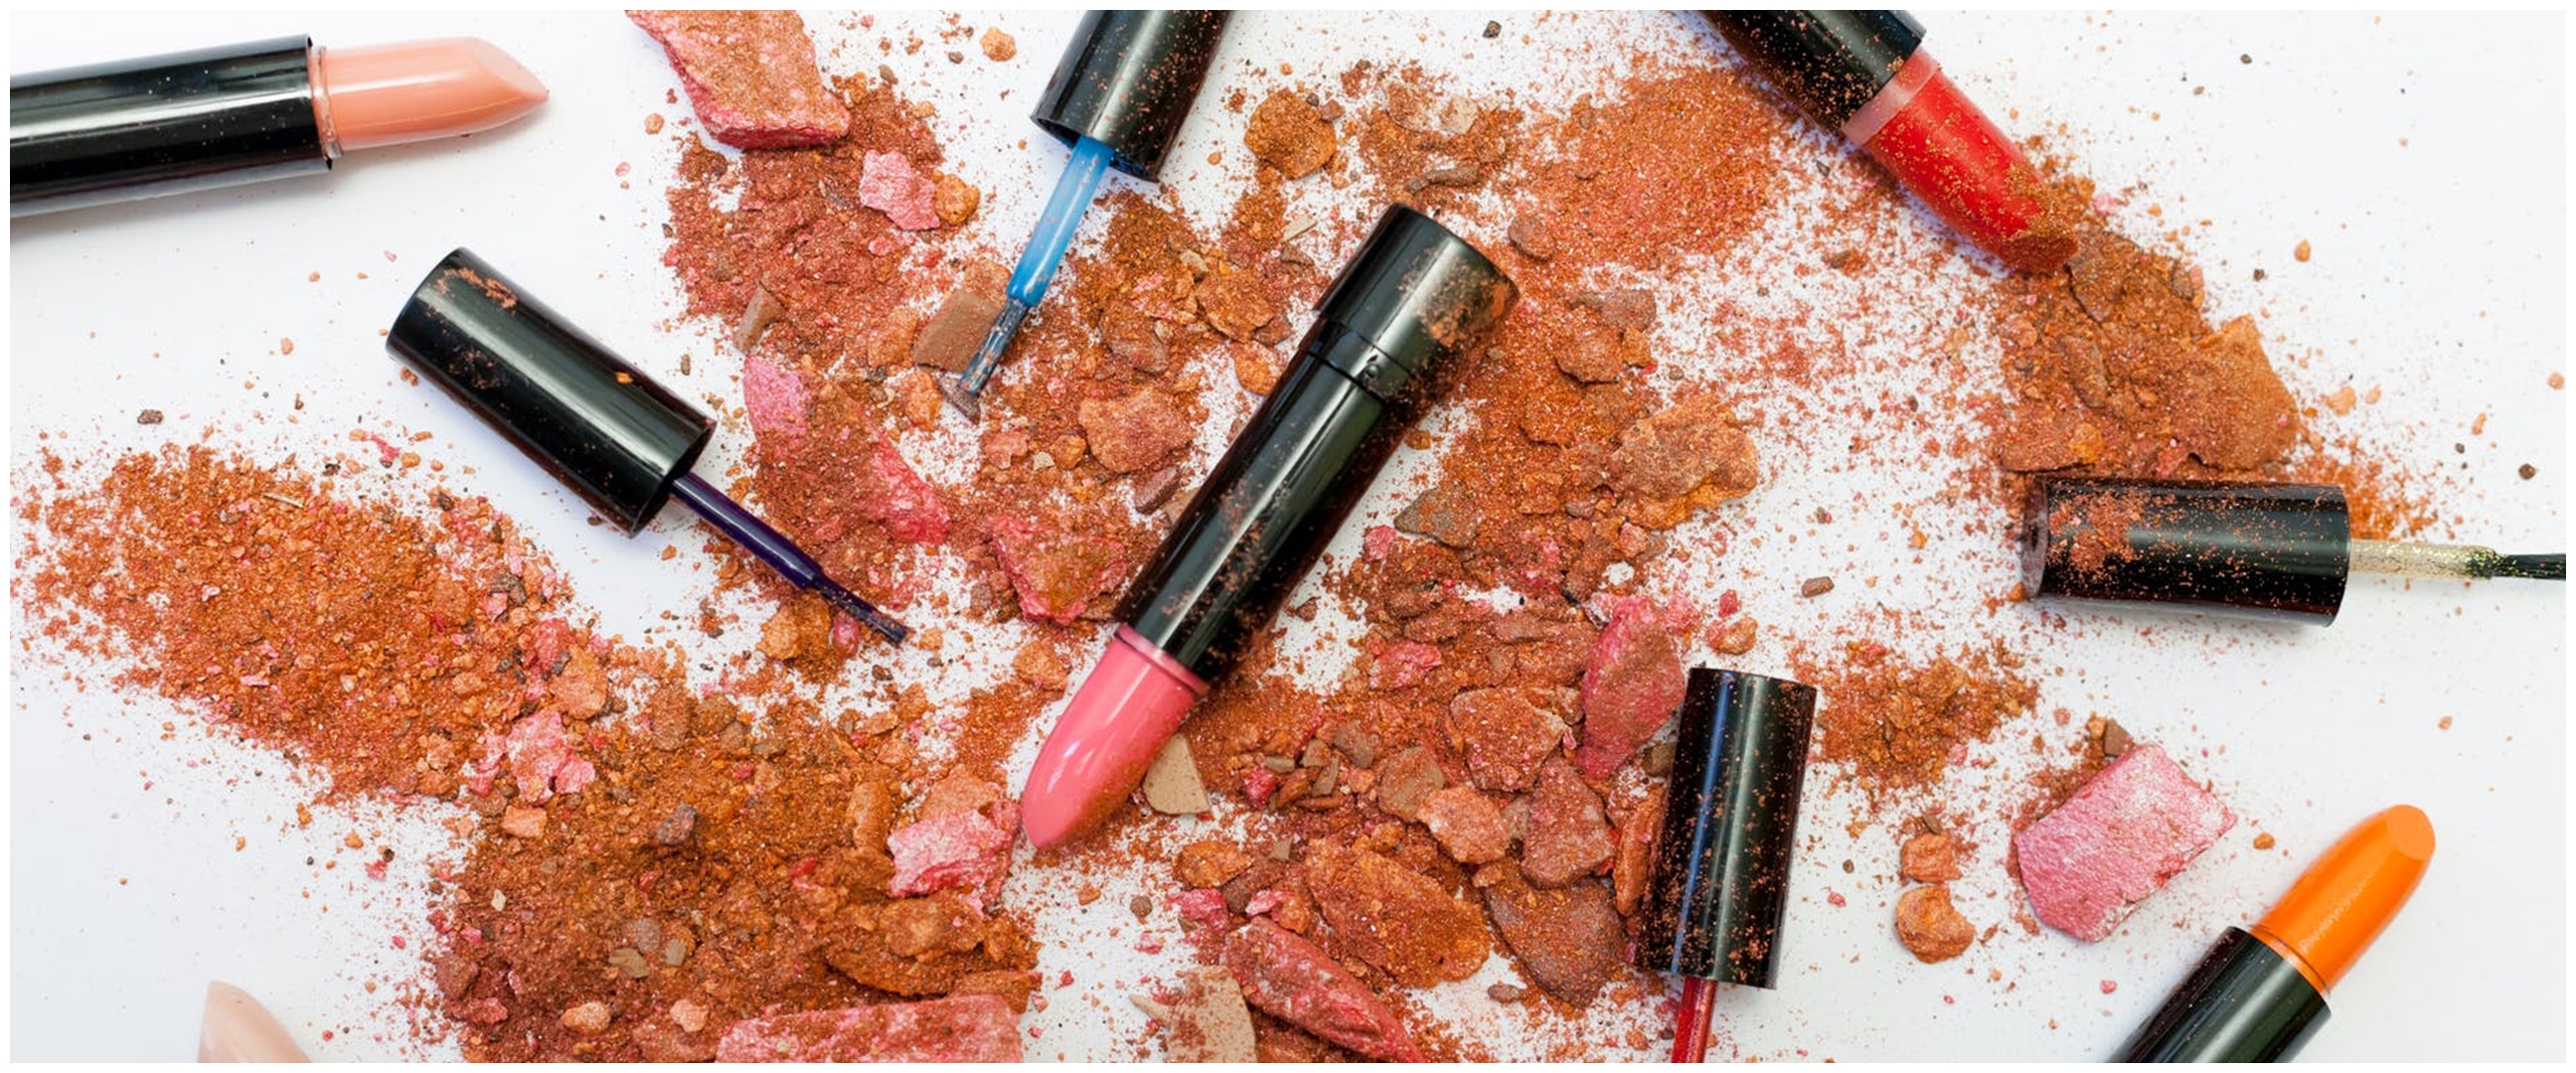 Ketahui kepribadian lewat warna lipstik favorit, apa kesukaanmu?